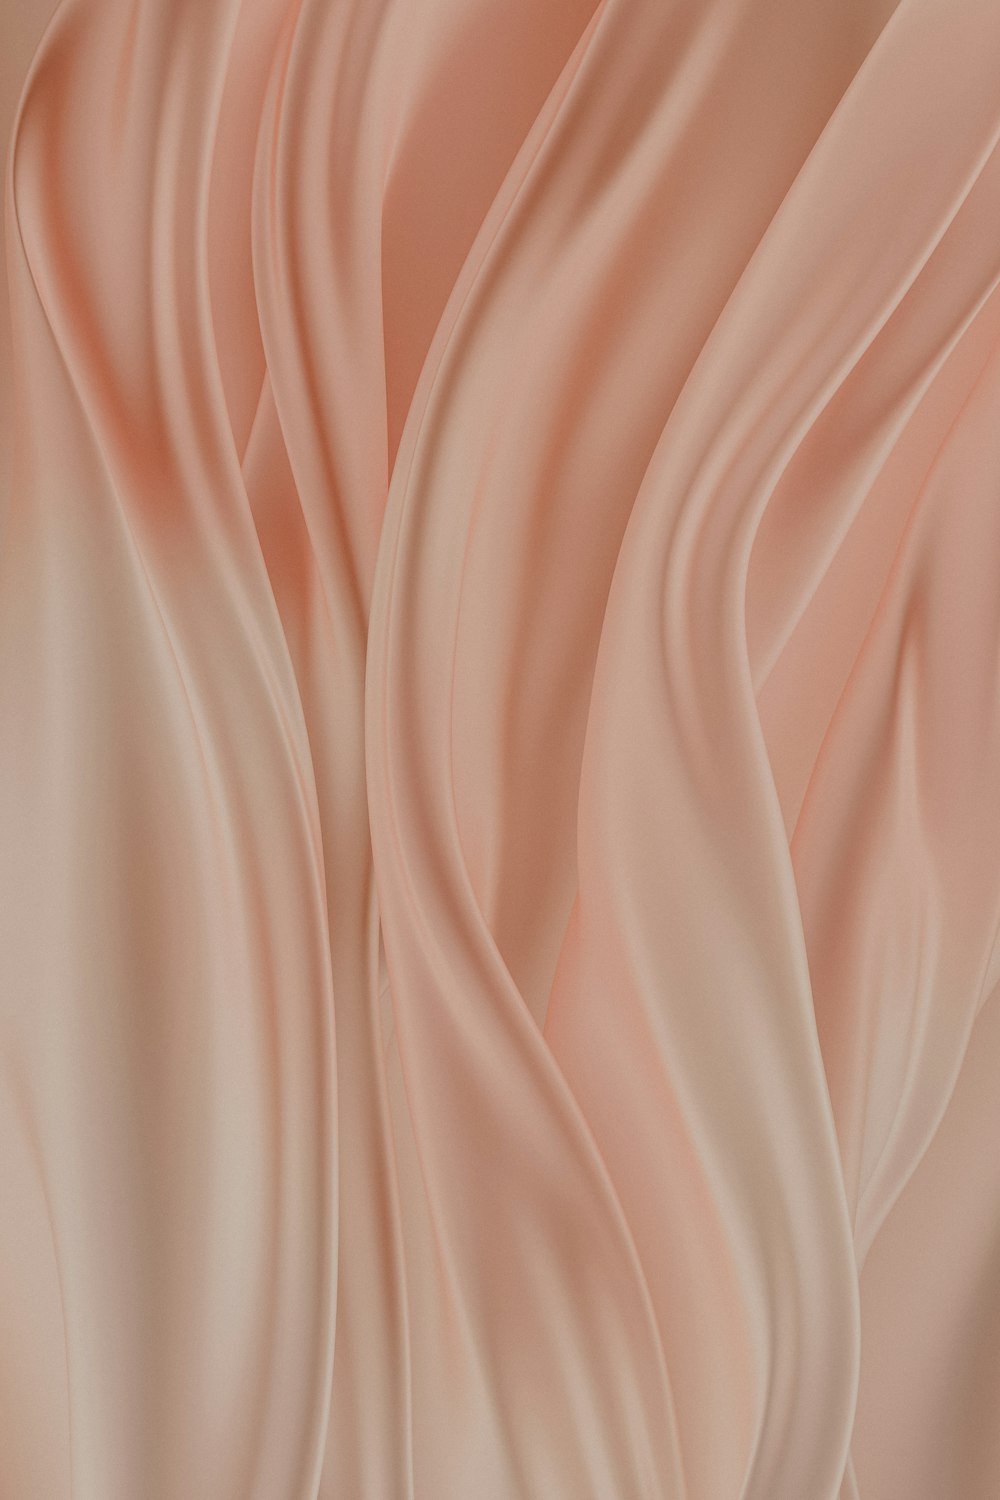 波状の折り目を持つ柔らかいピンクの背景